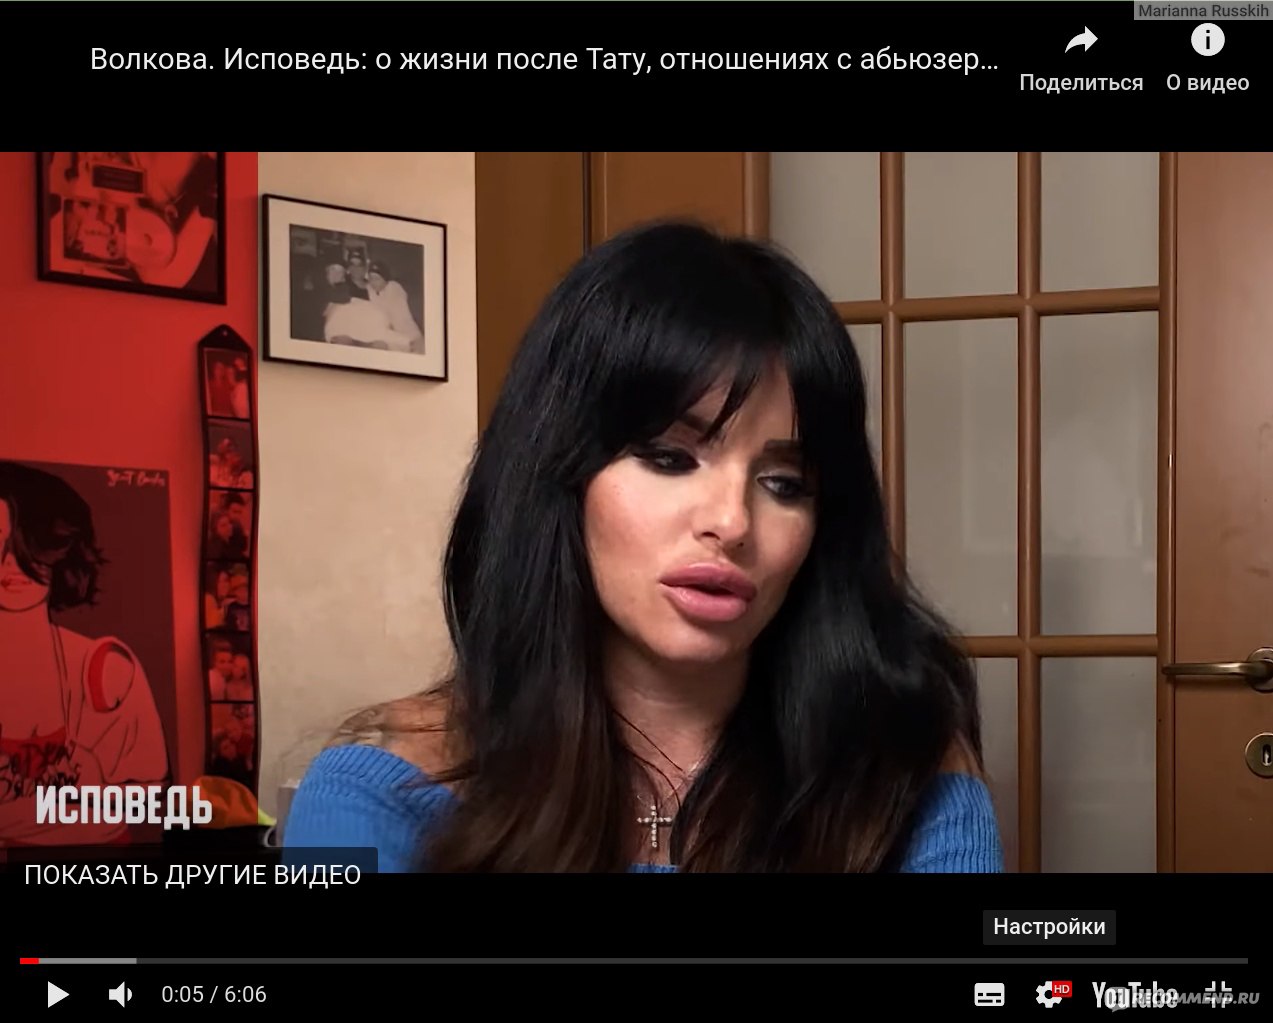 Юлия Волкова в стиле секс-рок - Развлечения - Видео - Комьпютеры